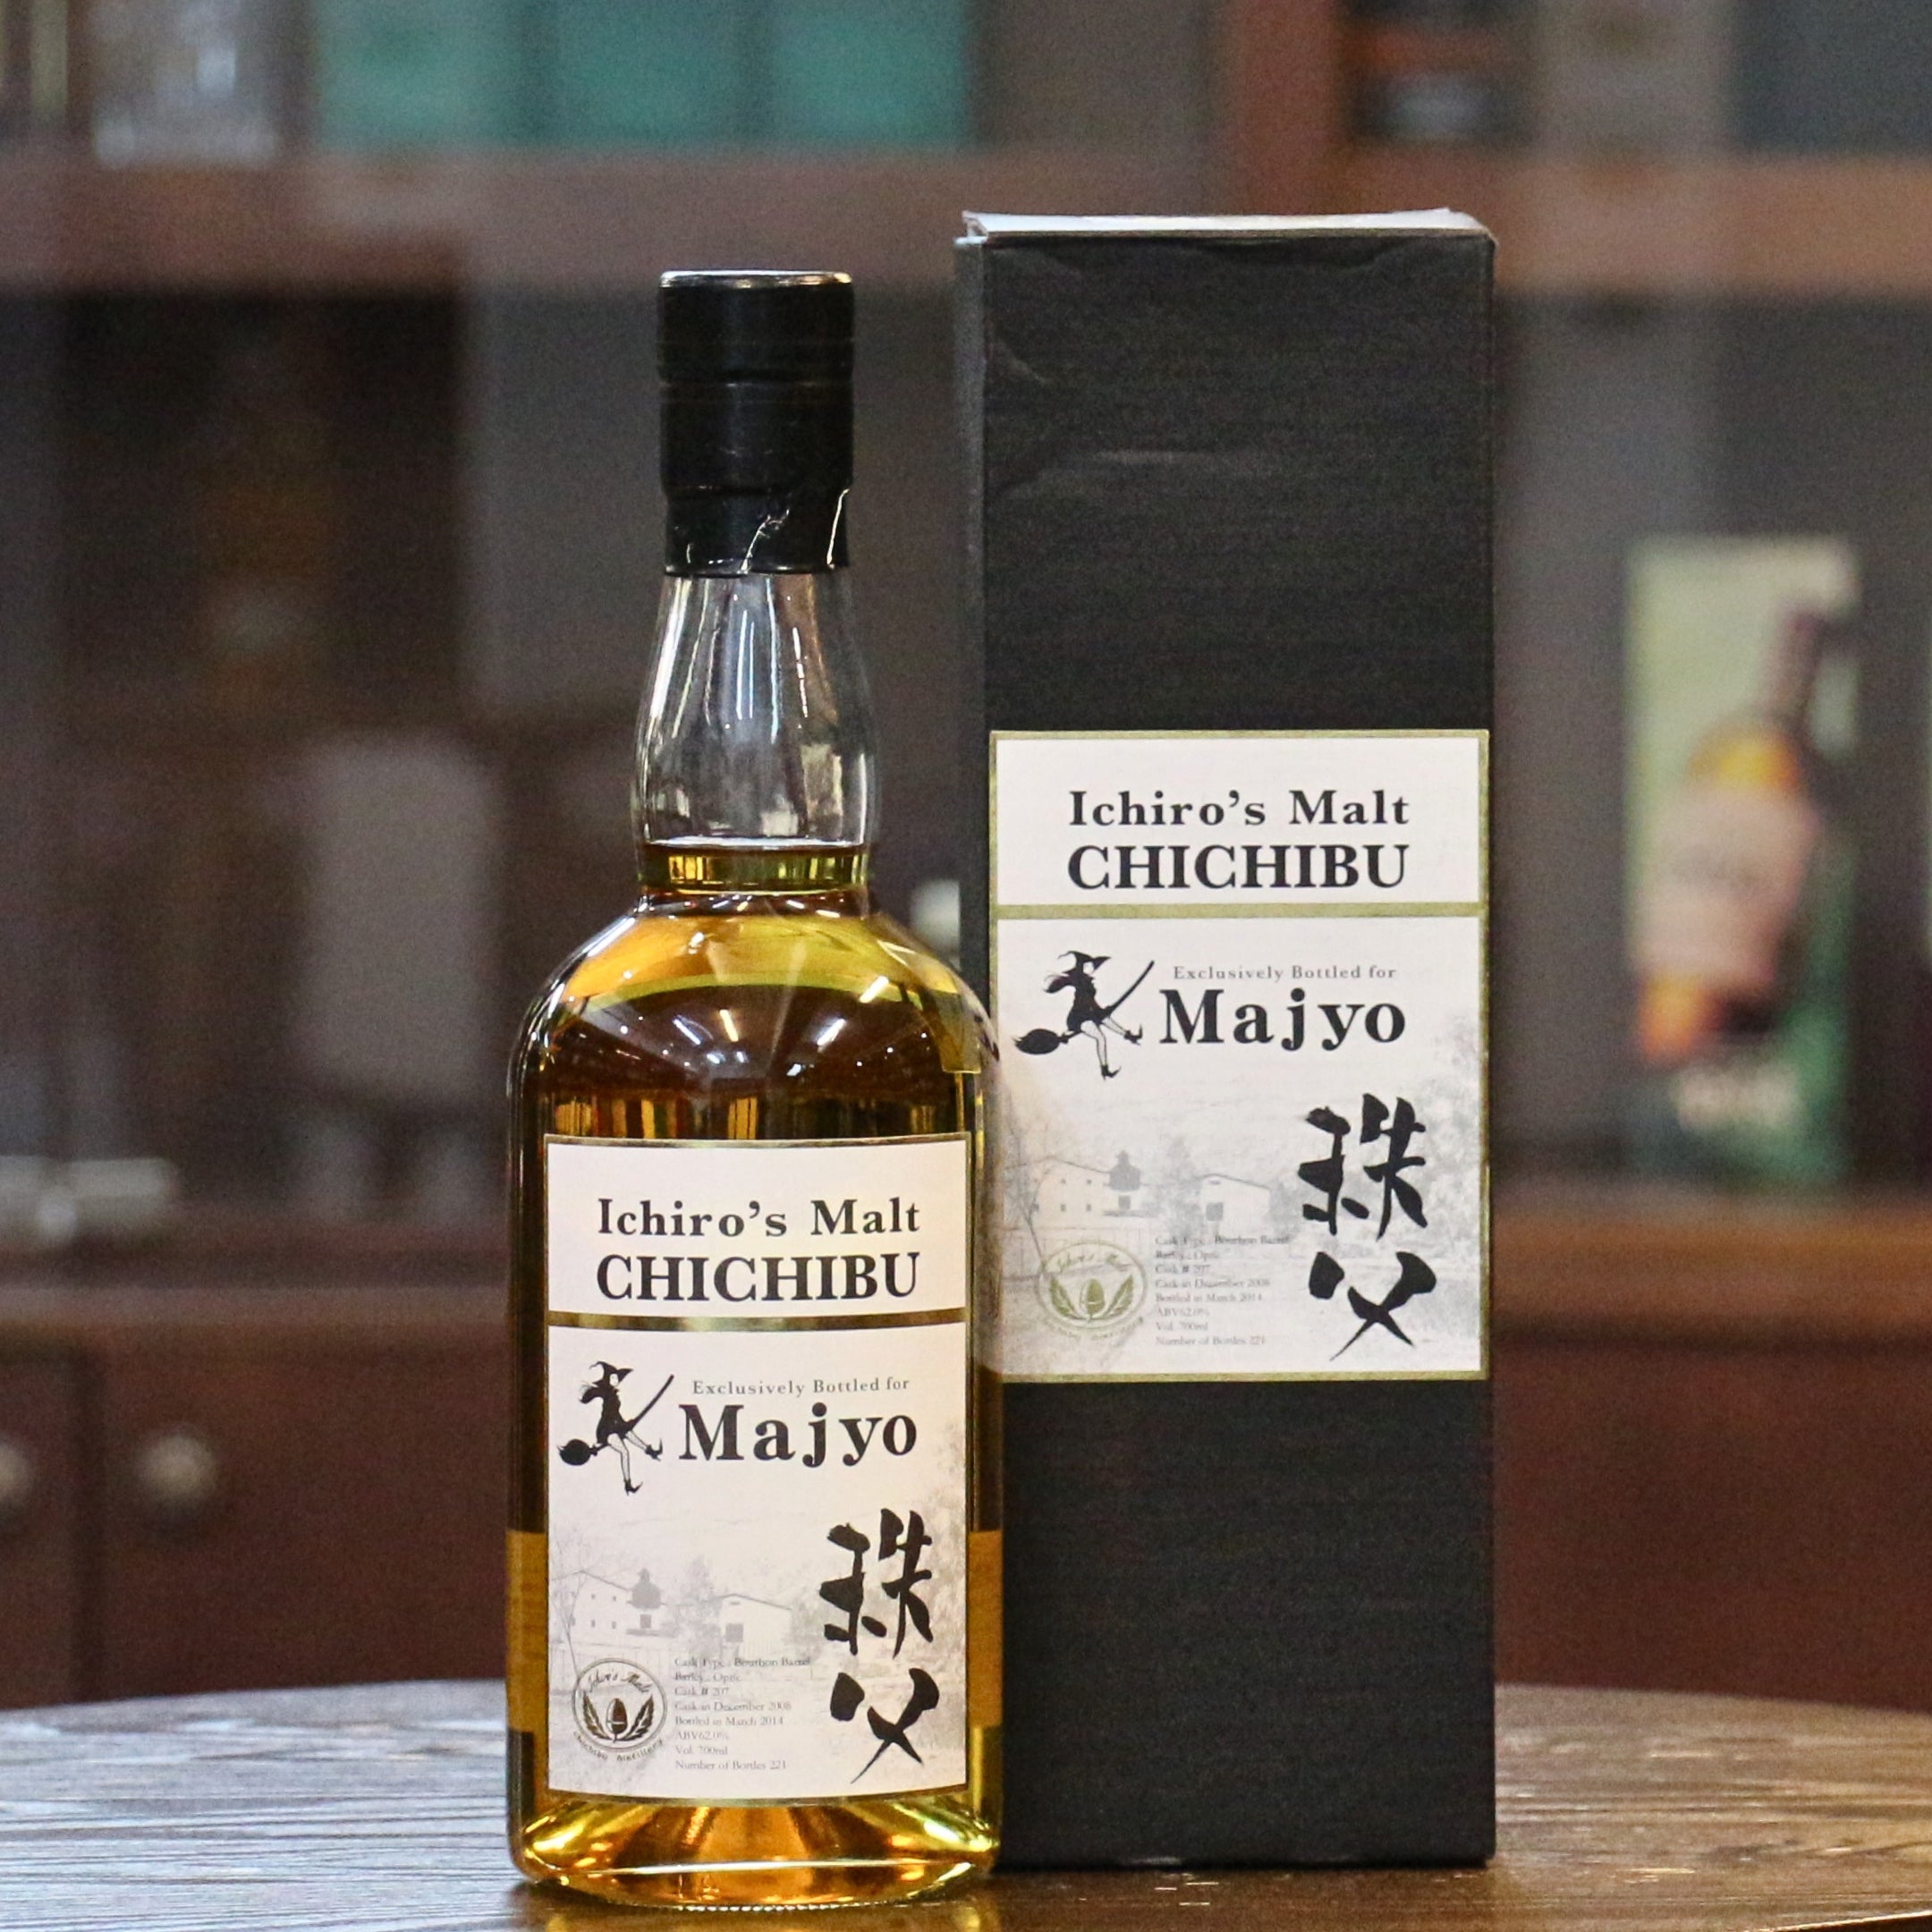 Ichiro's Malt Chichibu | Majyo Exclusive | Bourbon cask #207 | Japanese Whisky